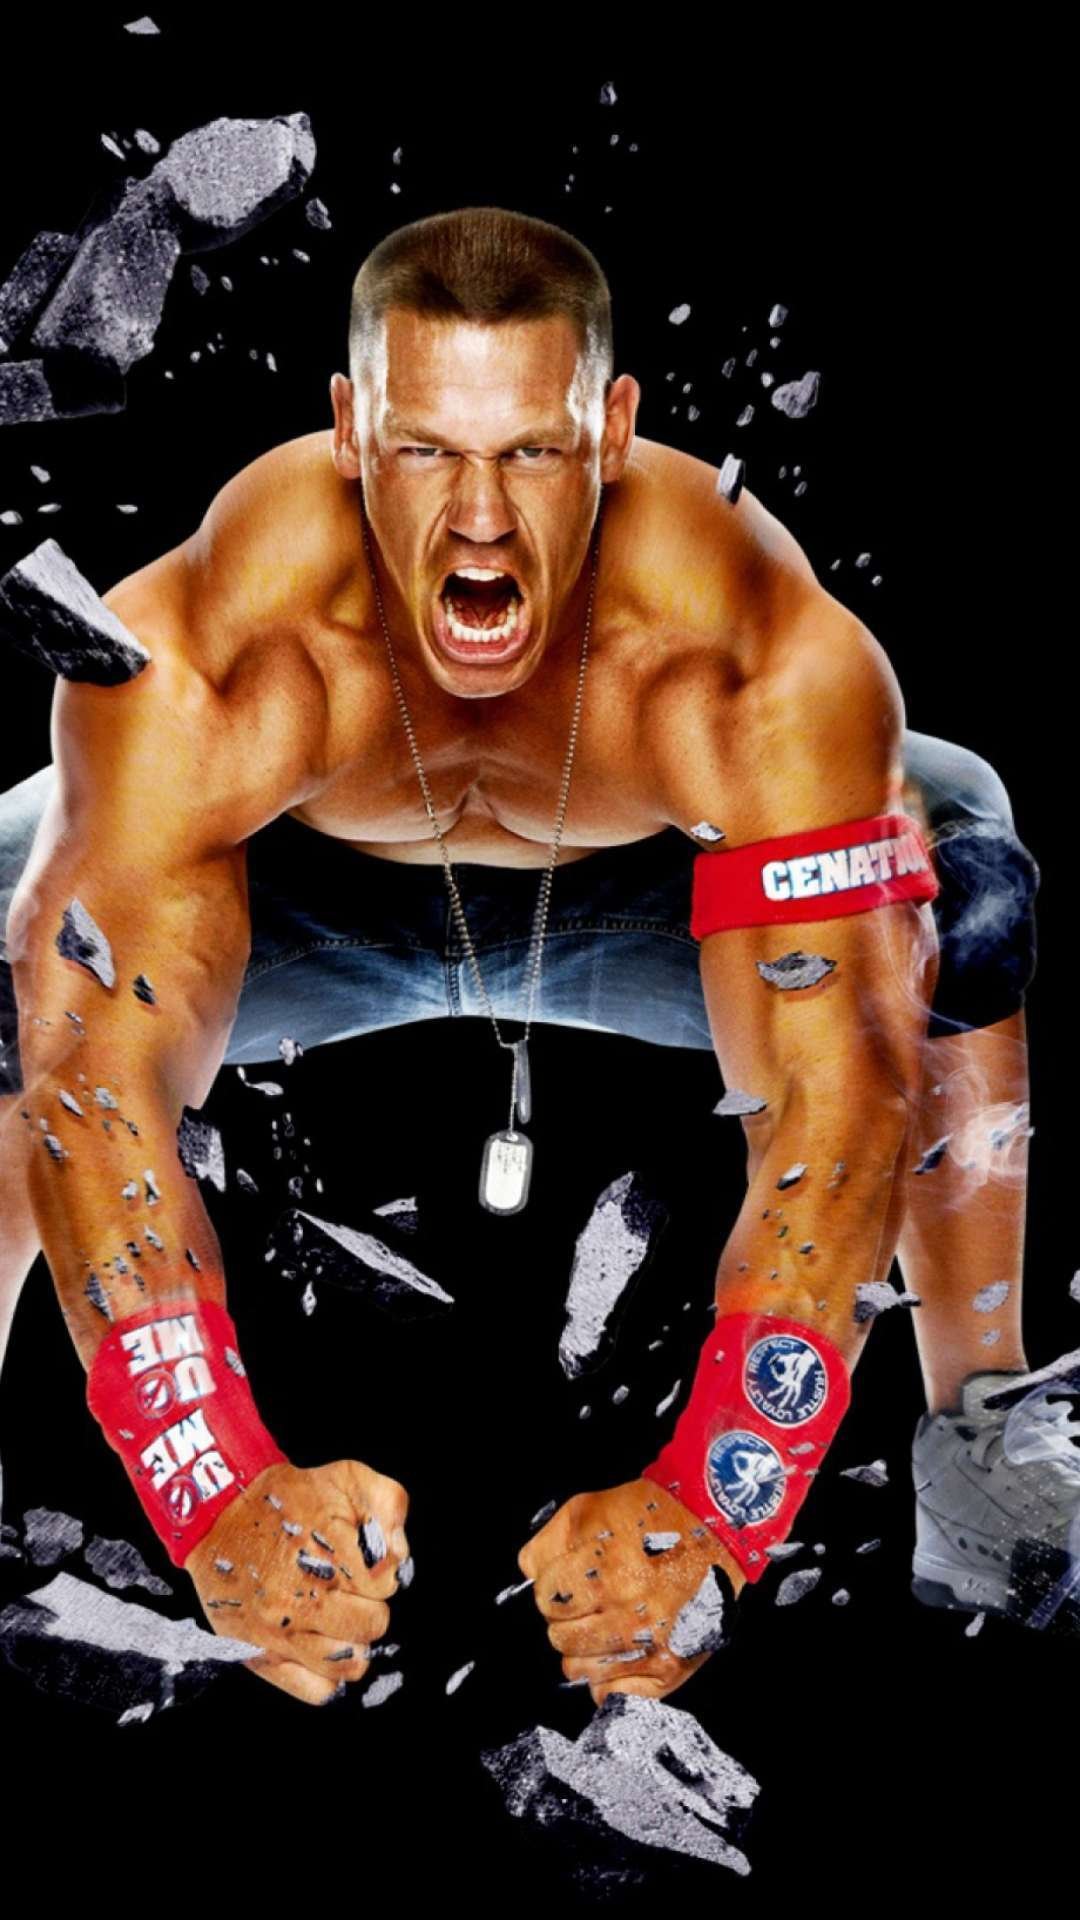 John Cena photo shoot outtakes photos  WWE